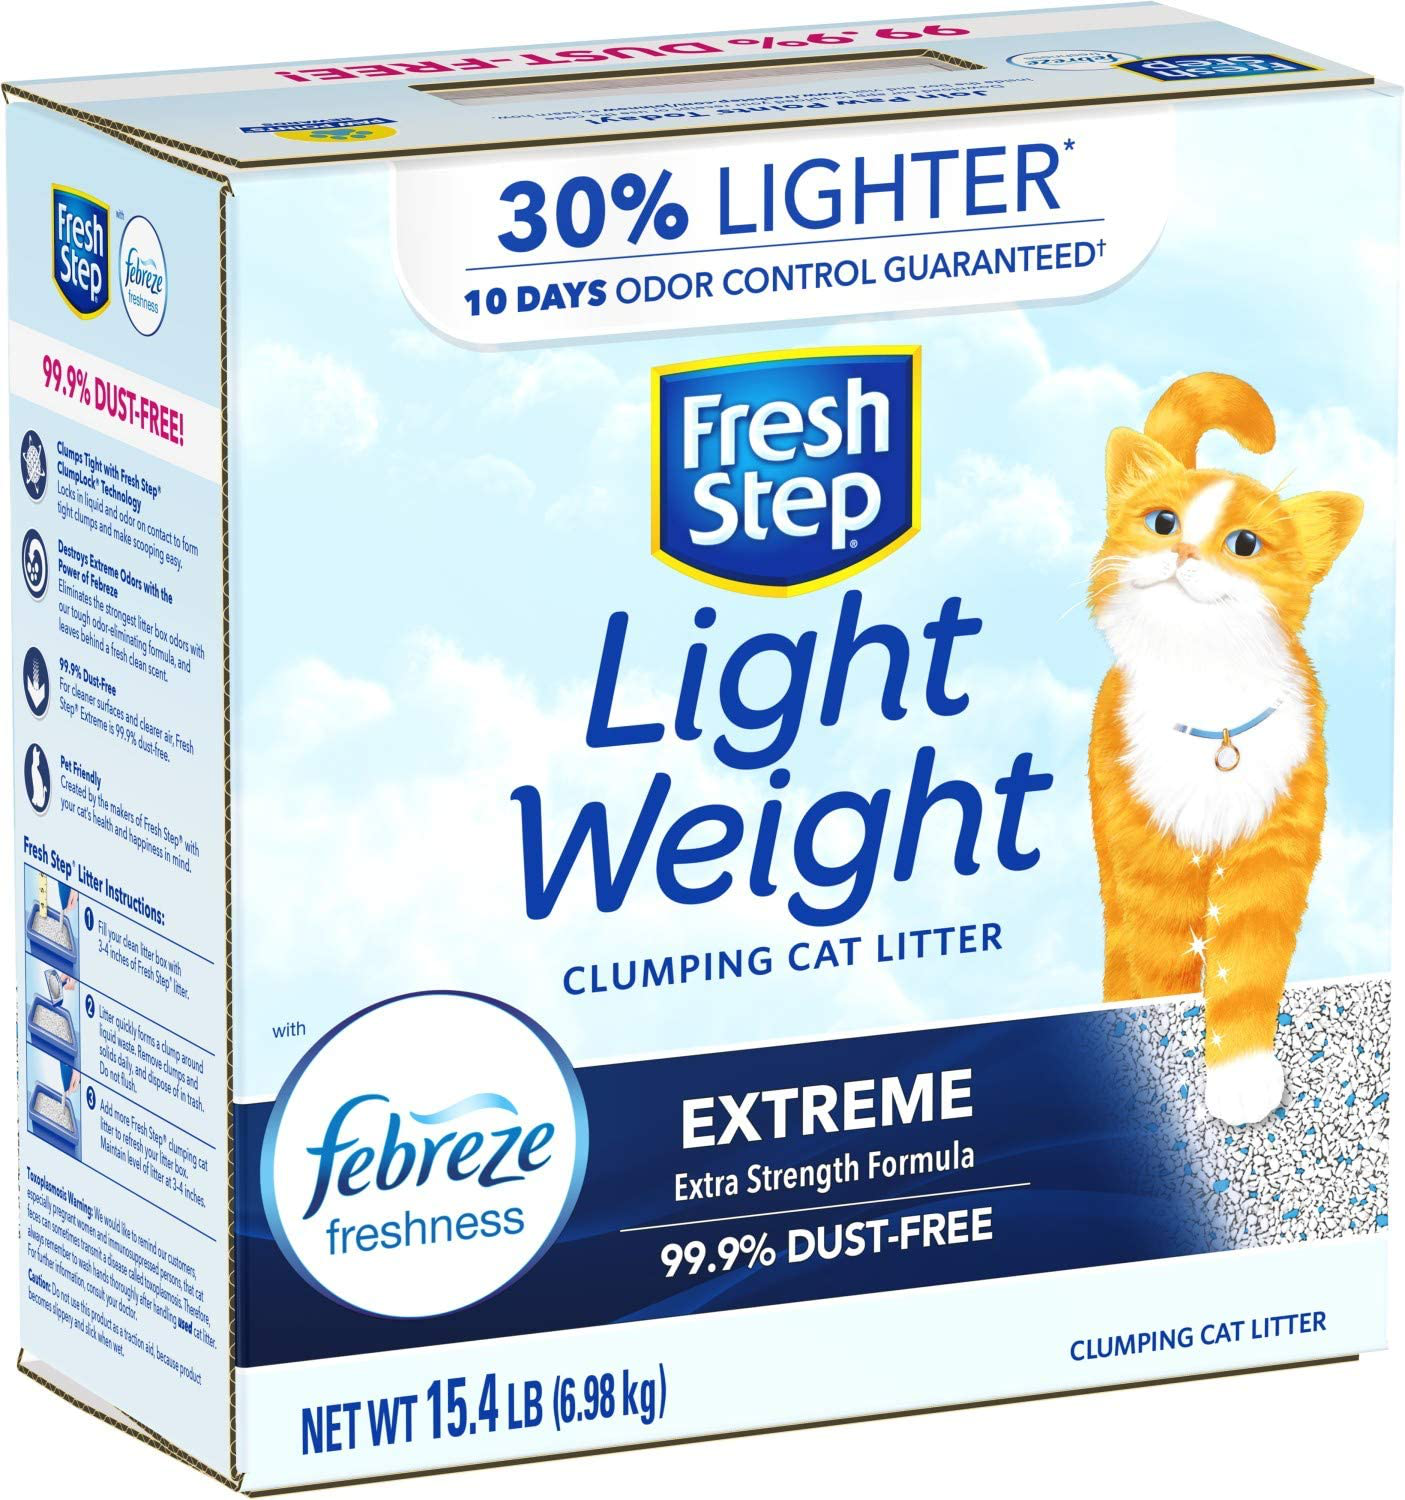 Fresh Step Lightweight Clumping Cat Litter - 15.4Lb